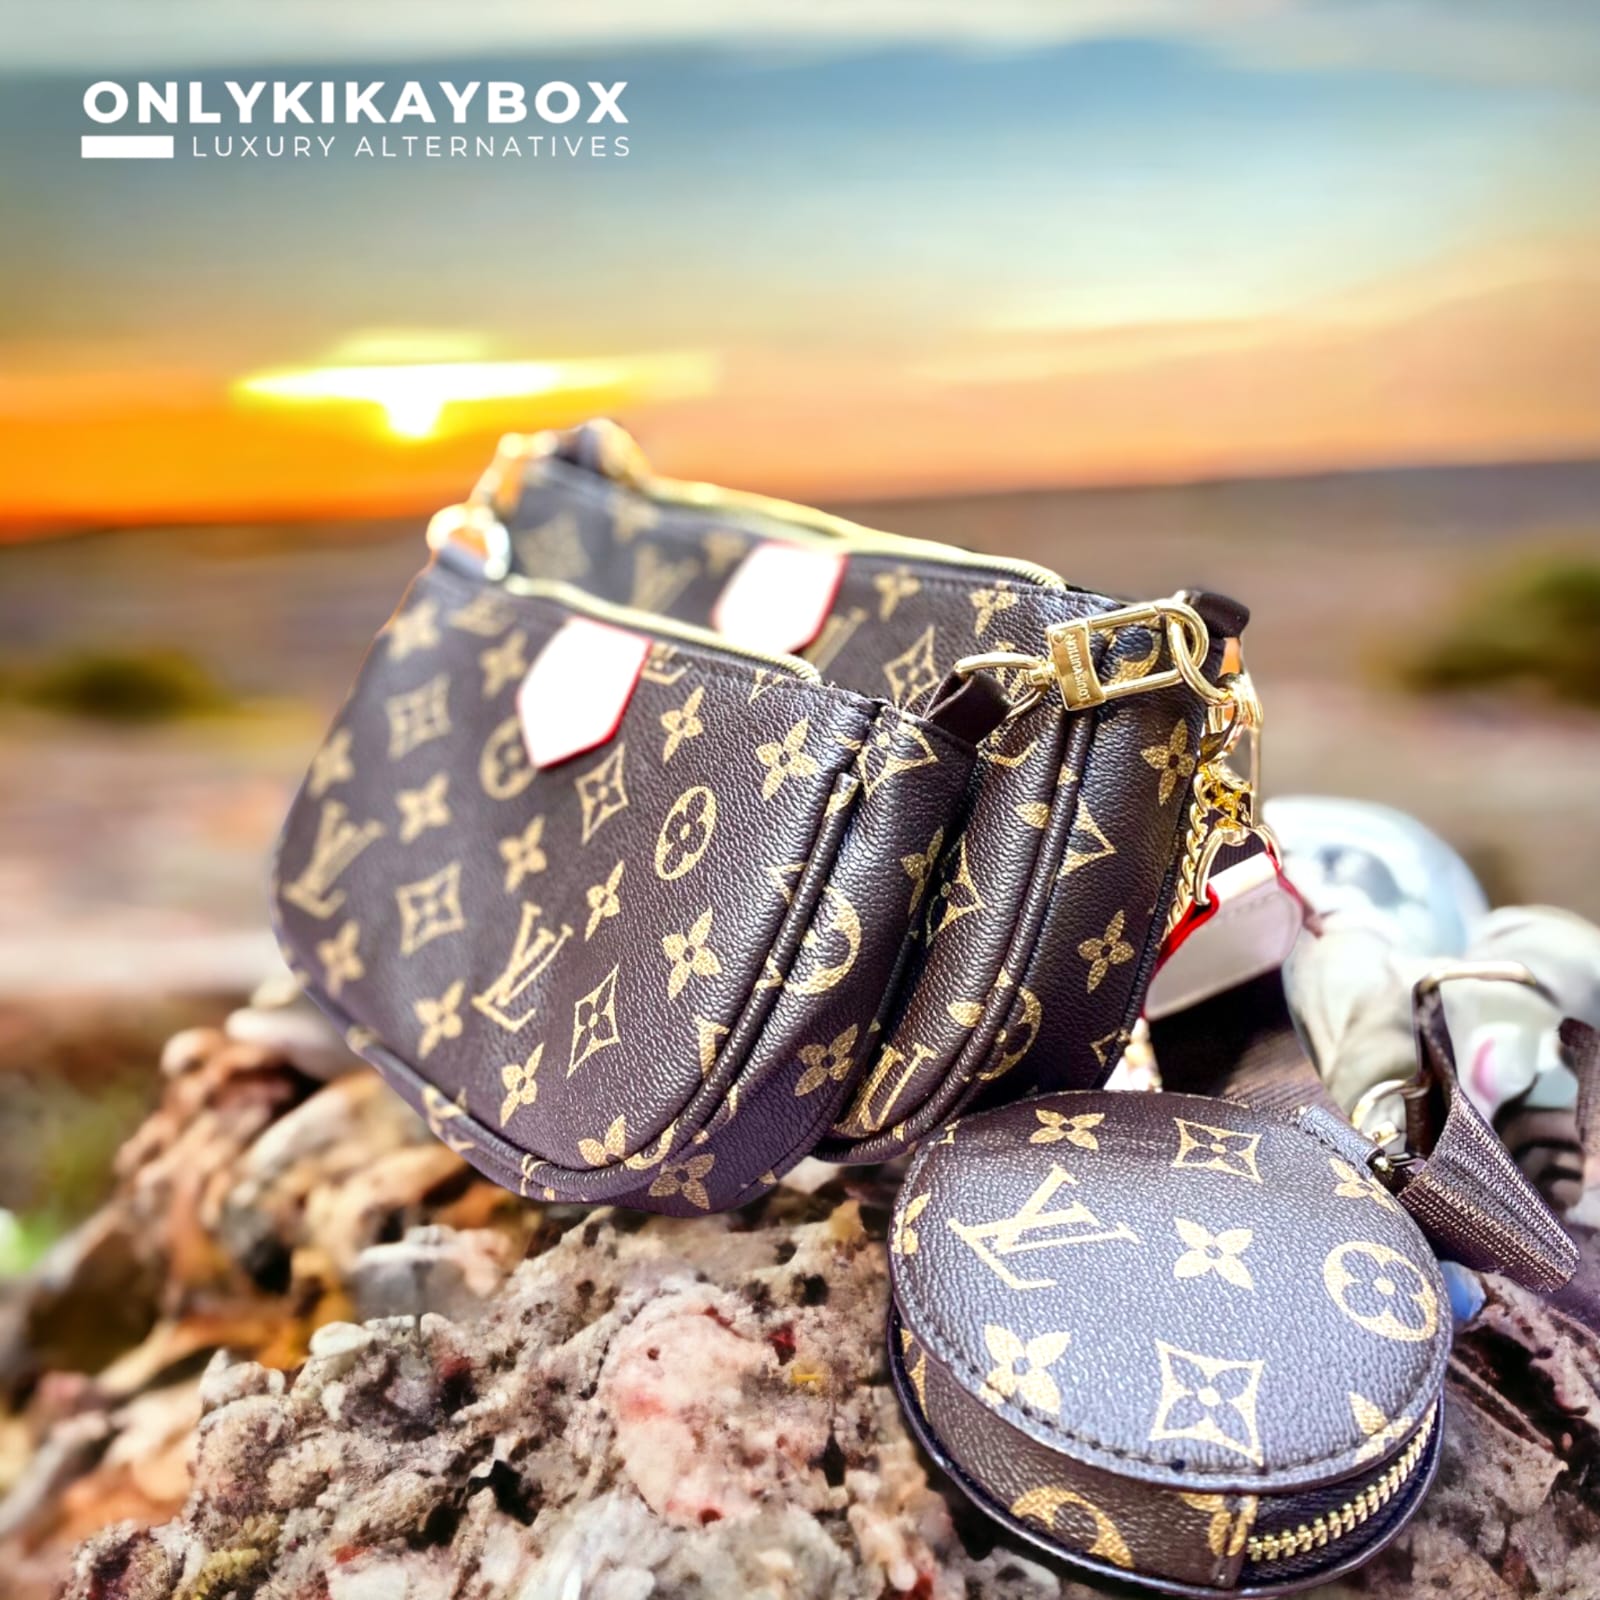 BXU LV 082 3in1 Pochette Mono Sling Bag – Onlykikaybox